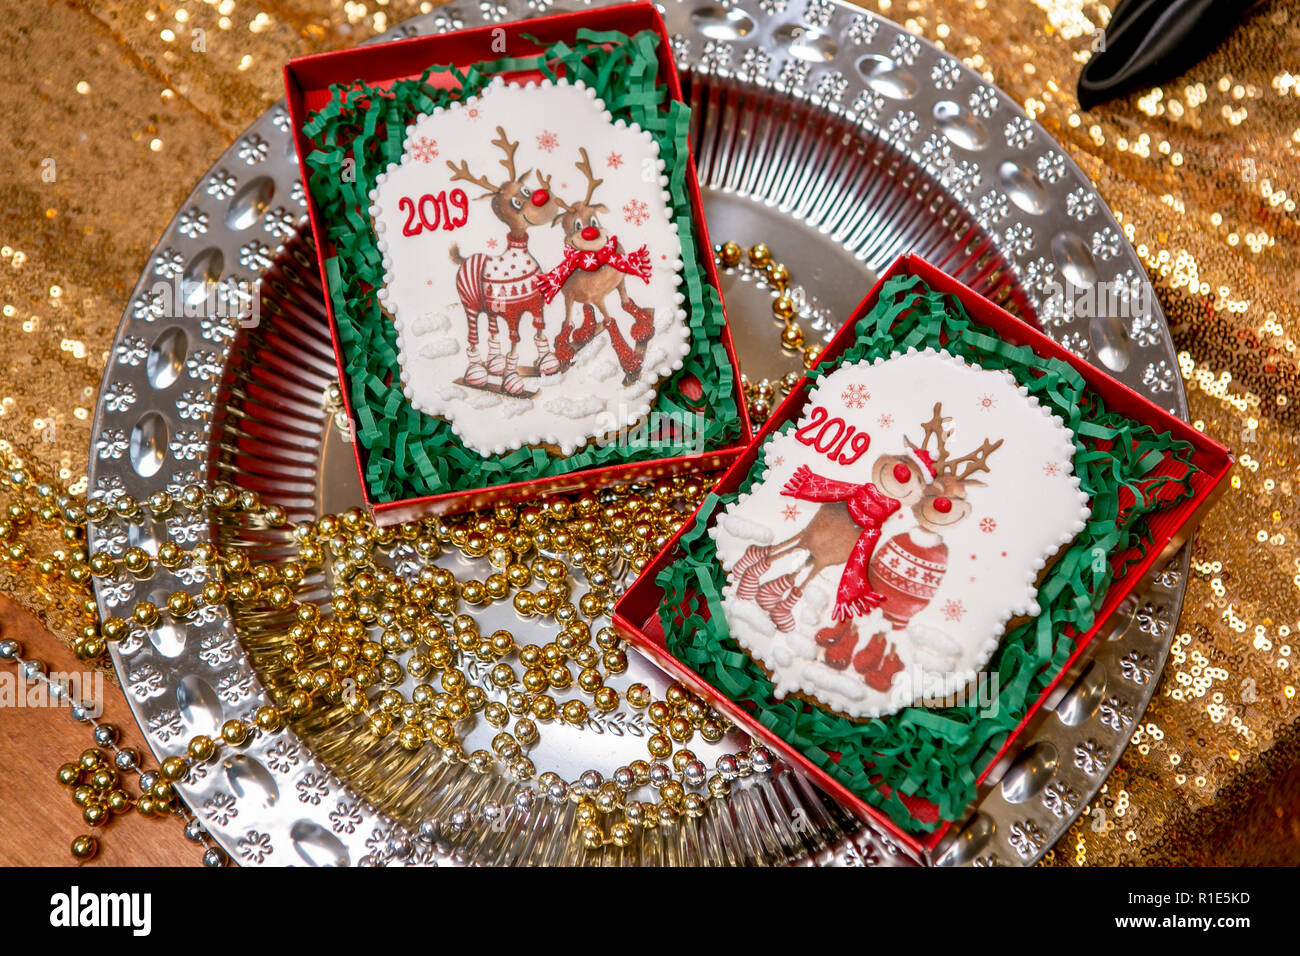 Cookie con caprioli e numeri 2019 in scatola di cartone su un vassoio con i talloni su sfondo dorato. Holiday dolci. Nuovo anno e tema natalizio. Festive mo Foto Stock